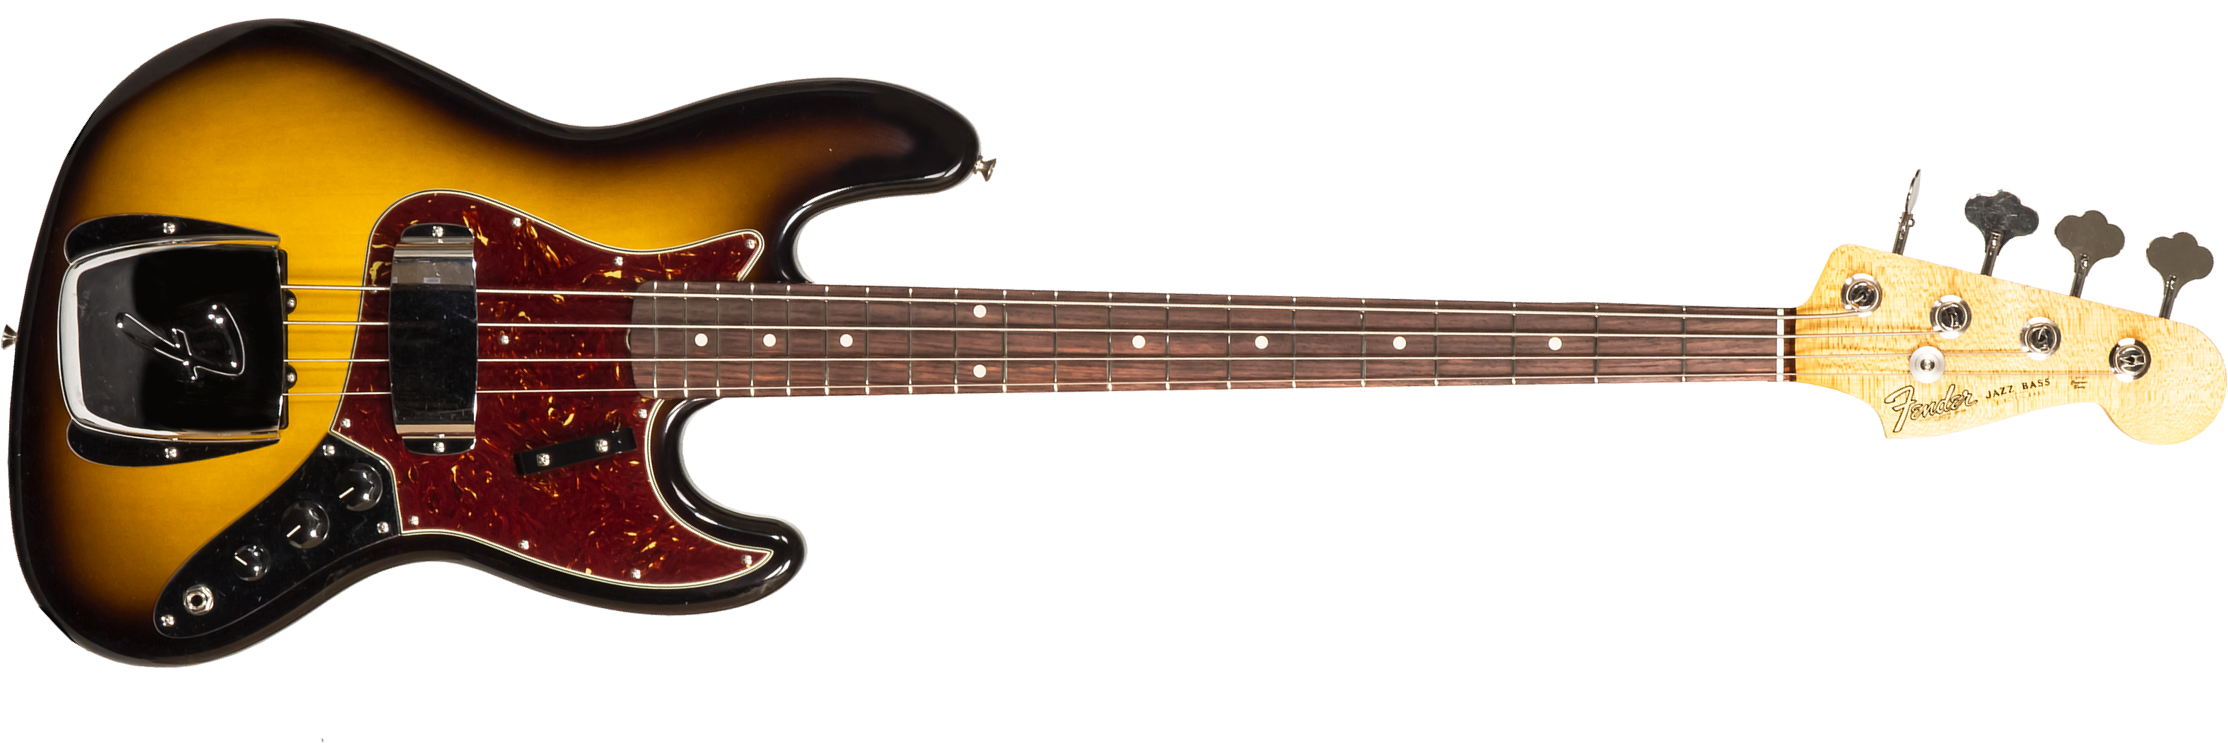 Fender Custom Shop Jazz Bass 1964 Rw #r126513 - Closet Classic 2-color Sunburst - Solidbody E-bass - Main picture